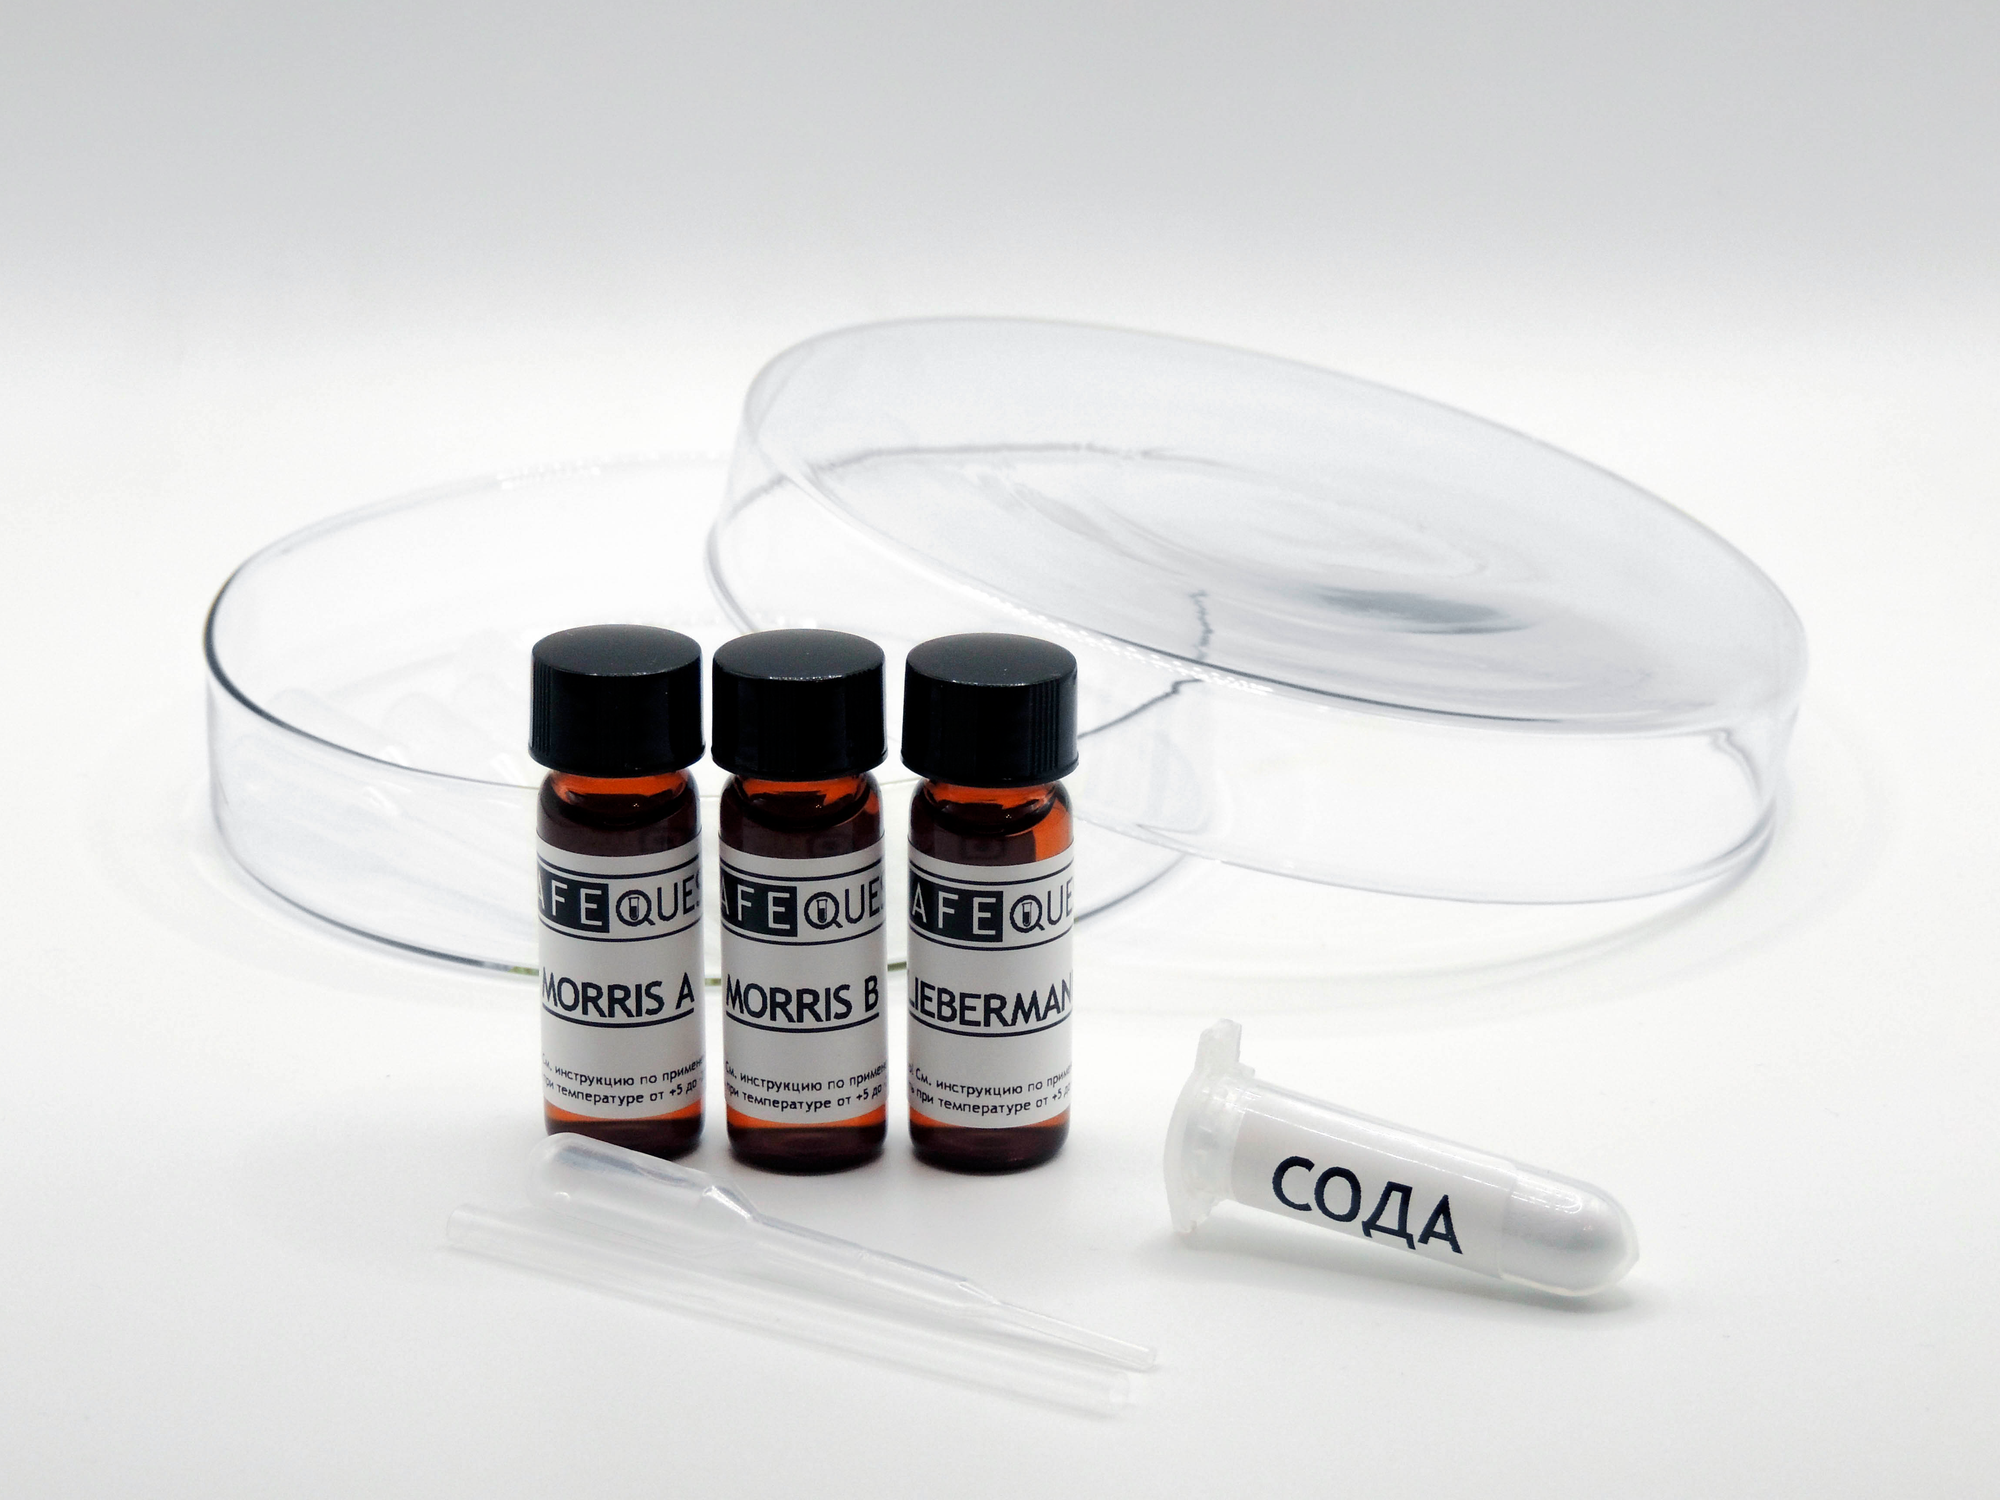 Набор SafeQuest "Cocaine" для экспресс-тестирования веществ минимум